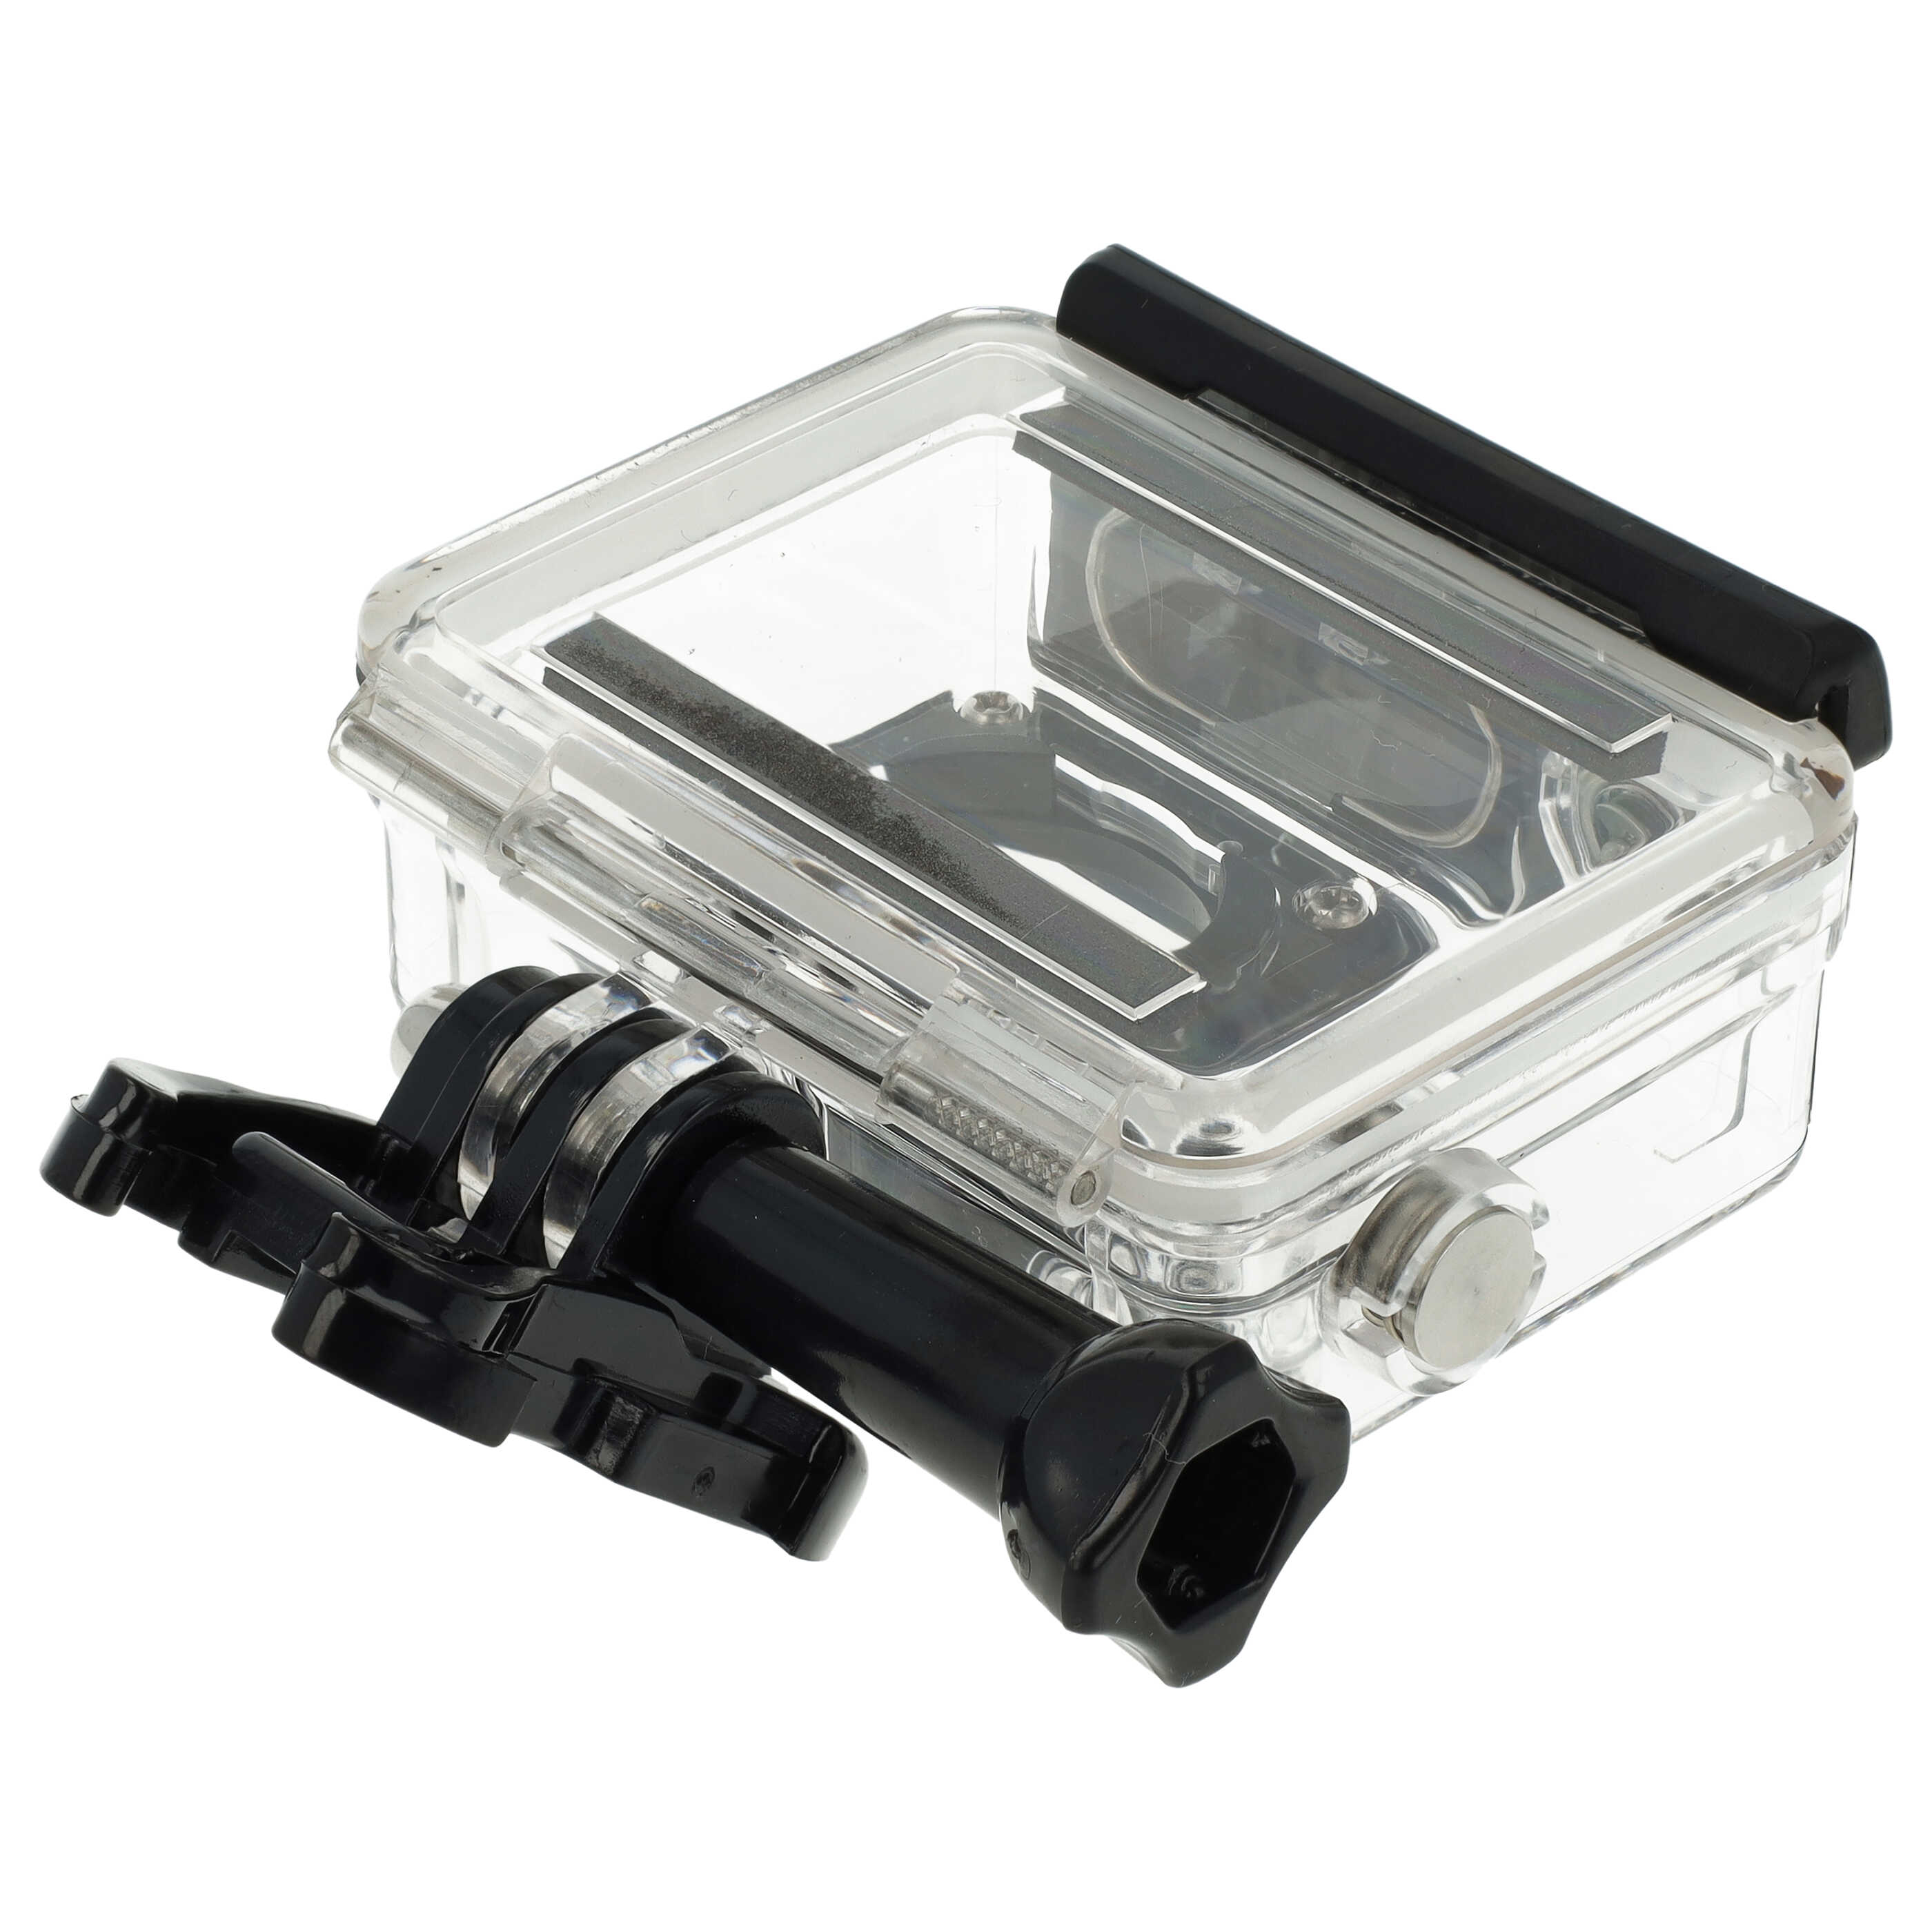 Obudowa wodoszczelna do kamery sportowej GoPro Hero 3, 3+, 4 - maks. głębokość 45 m